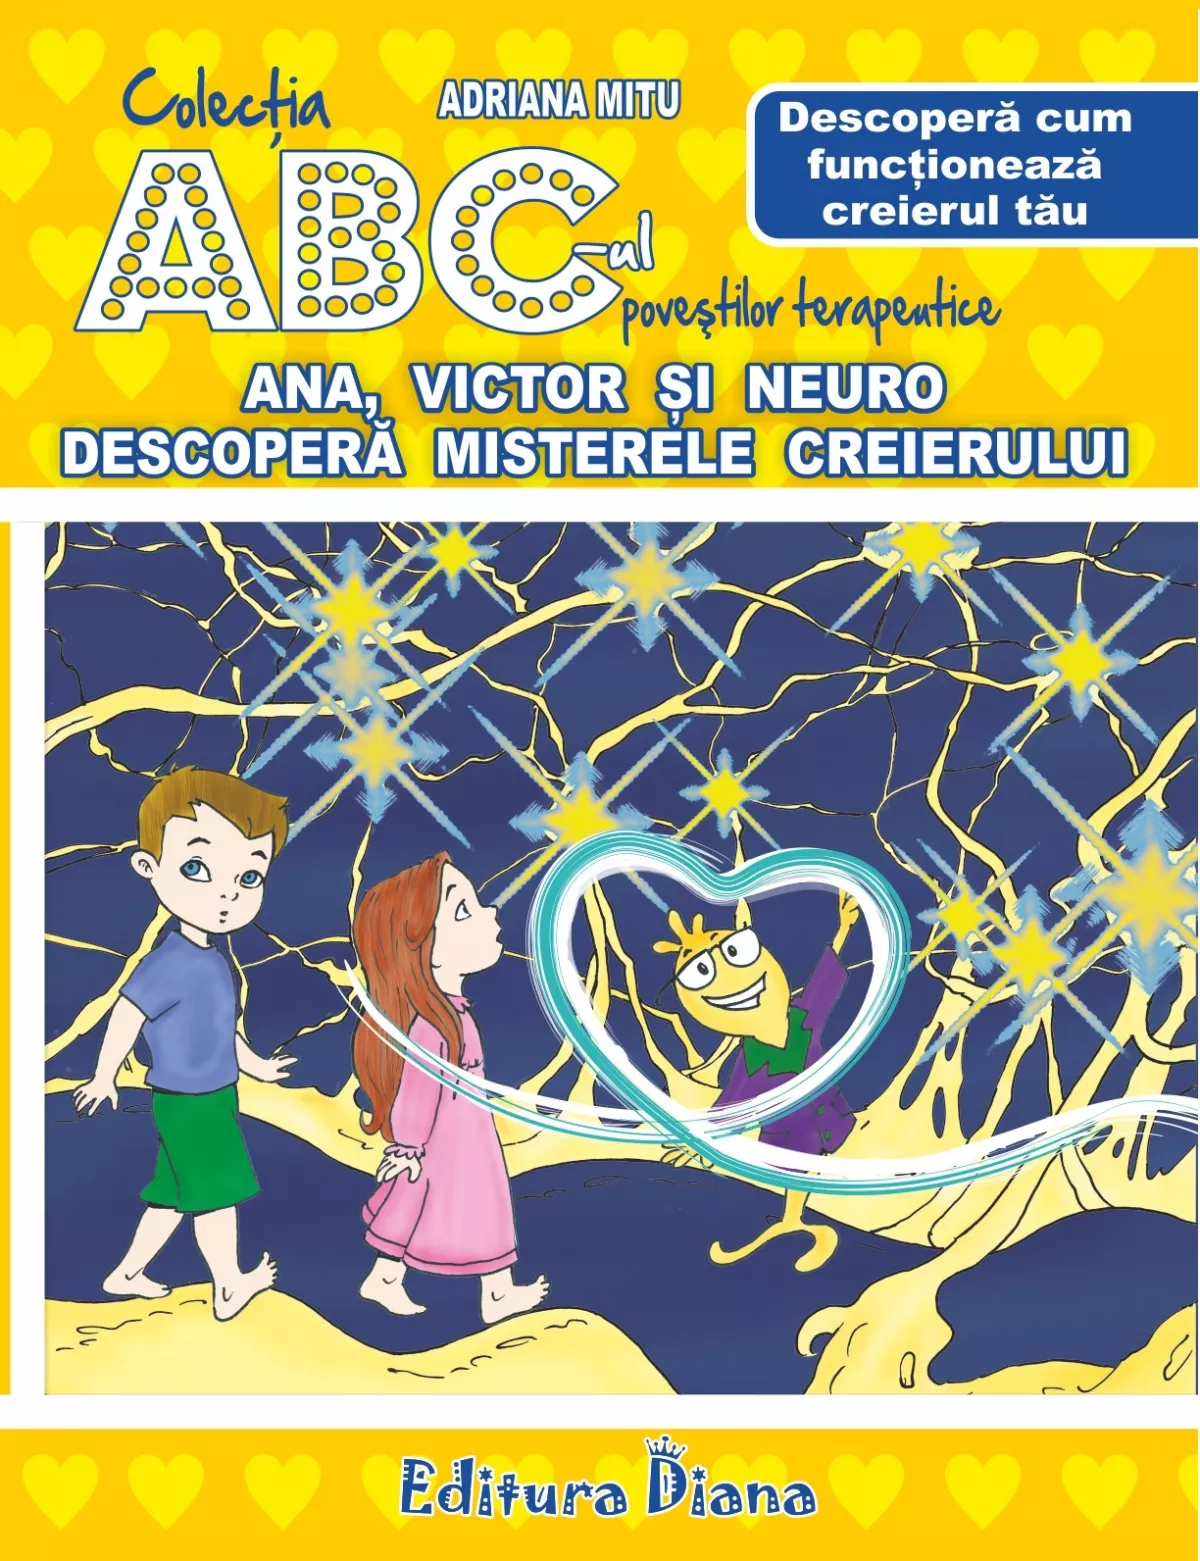 Ana, Victor si Neuro descopera misterele creierului - Descopera cum funcționeaza creierul tau - Set Puzzle + poveste terapeutica